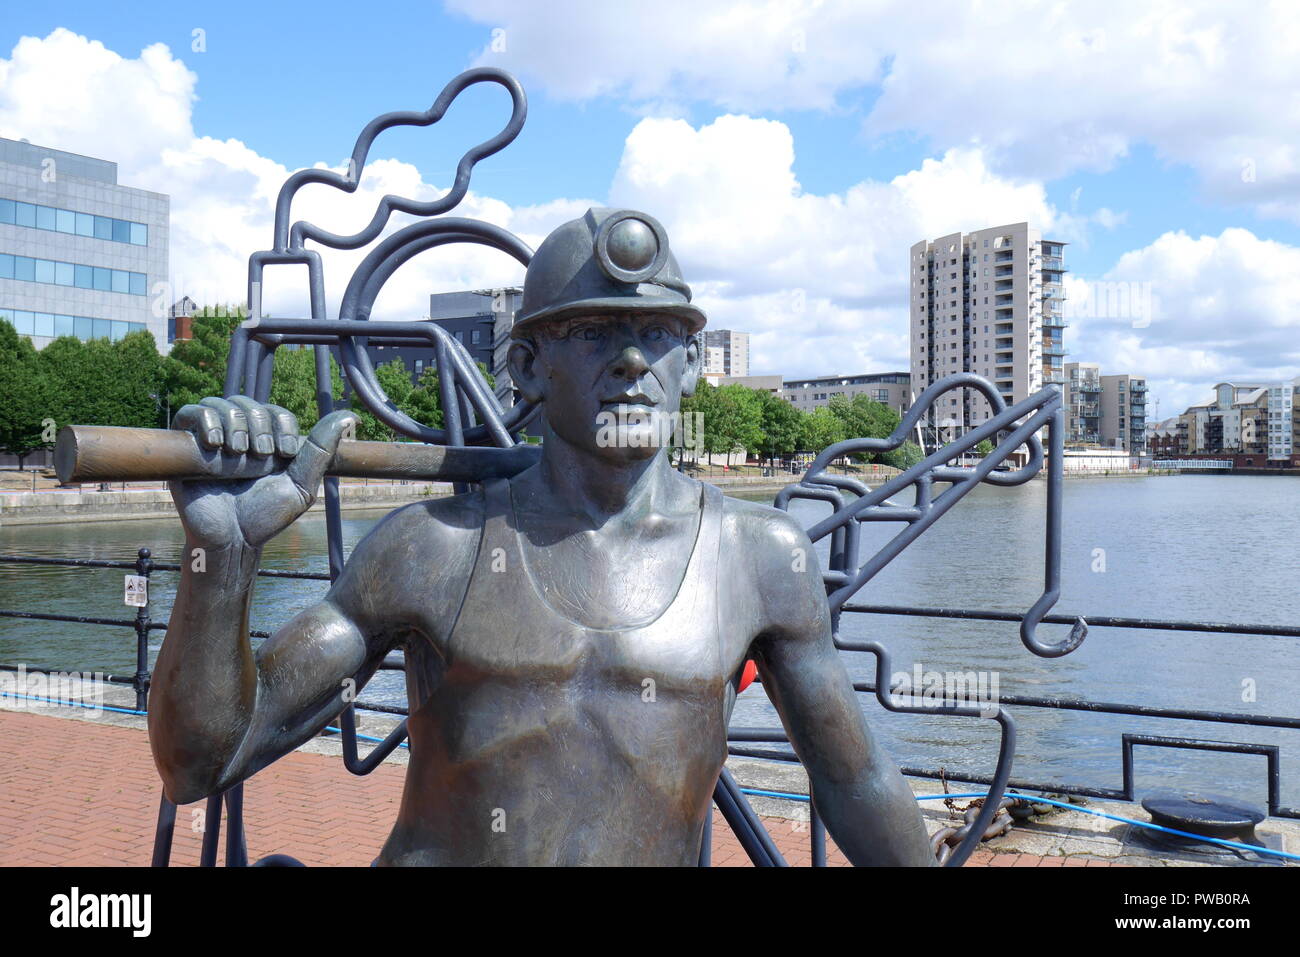 Depuis la fosse au Port, statue en bronze d'un mineur de charbon par John Clinch, la baie de Cardiff, Cardiff, Pays de Galles, Royaume-Uni Banque D'Images